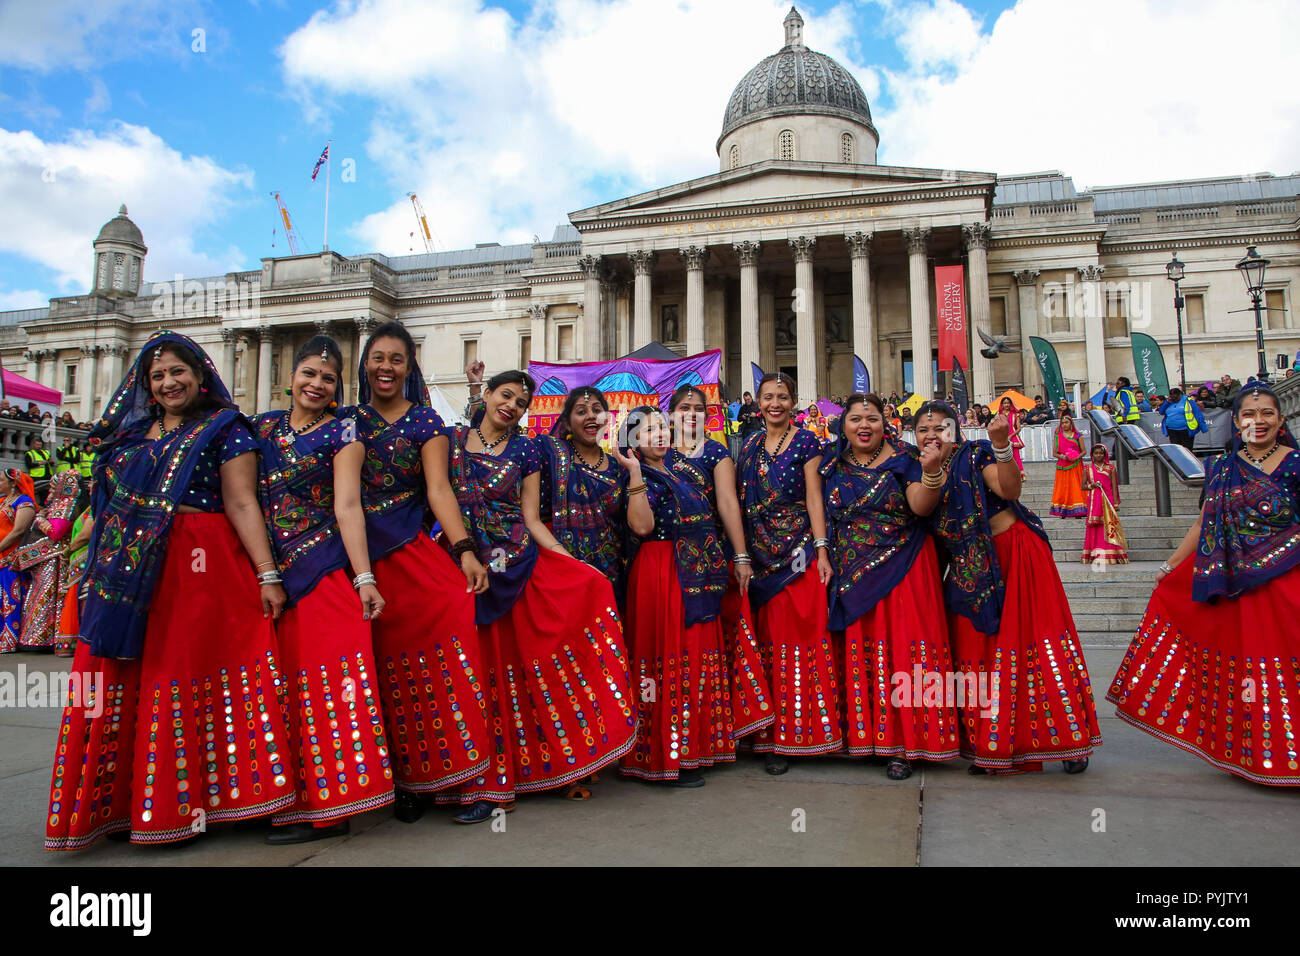 Trafalgar Square, London, UK. 28 Okt 2018 - Darsteller während der Messe Ghoomar Tanz - ein traditionelles Gujarati Volkstanz der Bhil Stamm in Anbetung durchgeführt Göttin Sarasvati, wurden die Tänzer twirling in und aus einem breiten Kreis. Hunderte von Hindus, Sikhs, Jains und Menschen aus allen Gemeinschaften Diwali feiern in London - Festival des Lichts teilnehmen, Diwali in London wird jedes Jahr gefeiert mit einem kostenlosen Konzert der traditionellen religiösen und Zeitgenössische asiatische Musik und Tanz. Credit: Dinendra Haria/Alamy leben Nachrichten Stockfoto